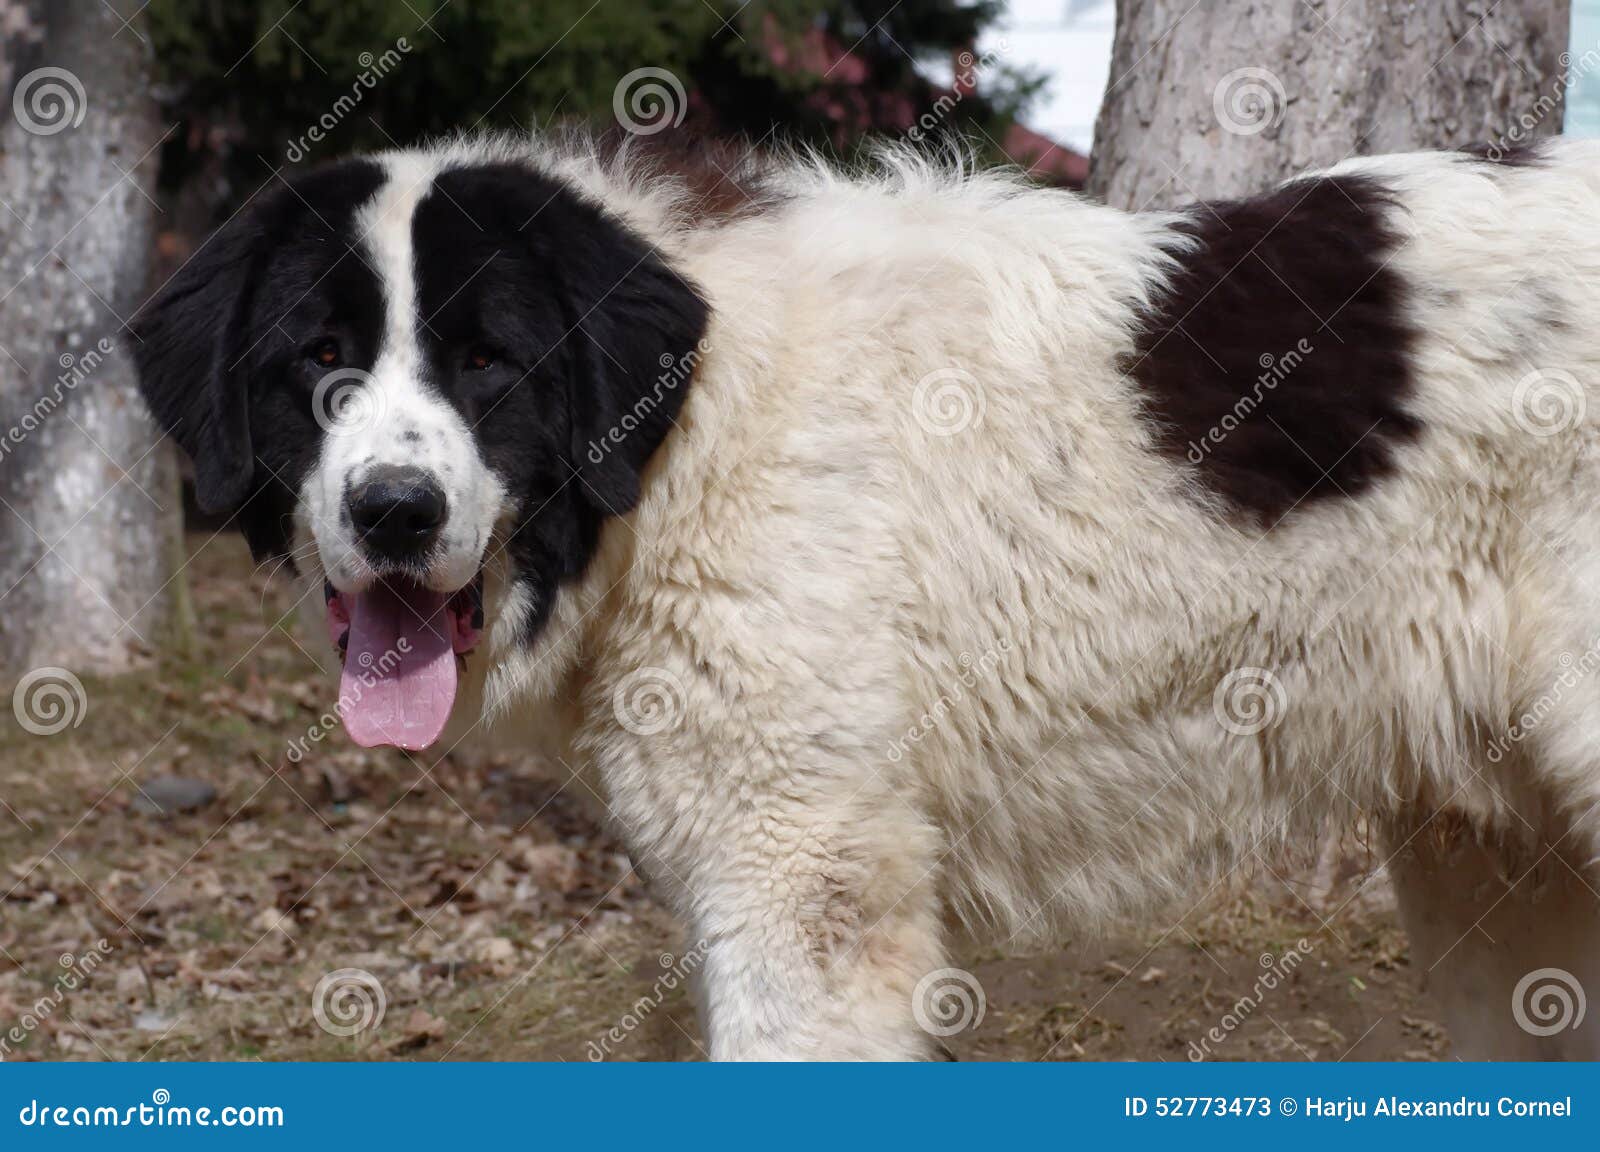 Bucovina Shepherd Dog Stock Image Image Of Carpathian 52773473